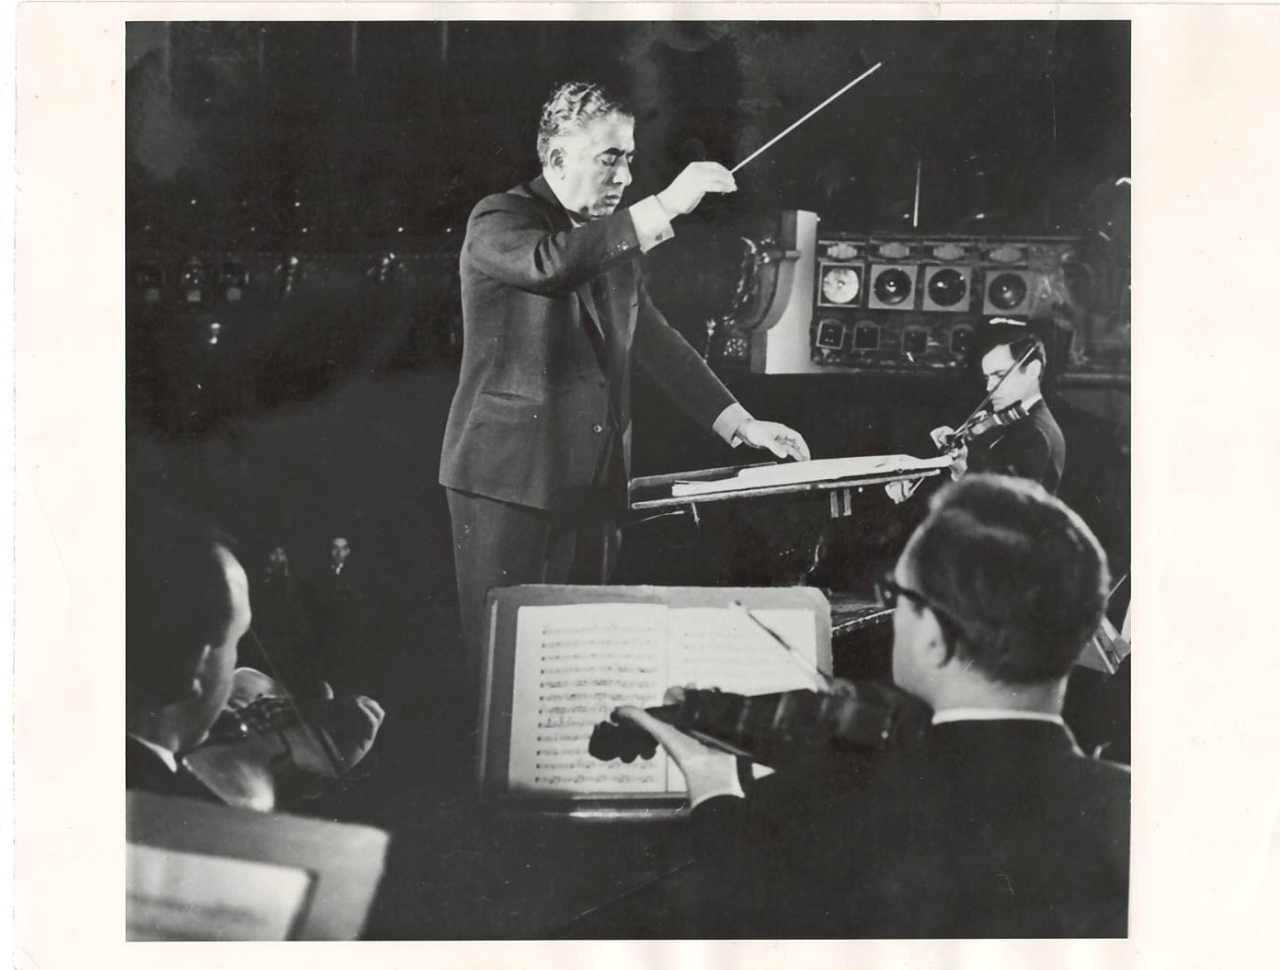 Լուսանկար.Ա.Խաչատրյանը ջութակահար Լեոնիդ Կոգանի և Փարիզի սիմֆոնիկ նվագախմբի հետ  փորձի ժամանակ ՝ իր հեղինակային համերգների օրերերին 